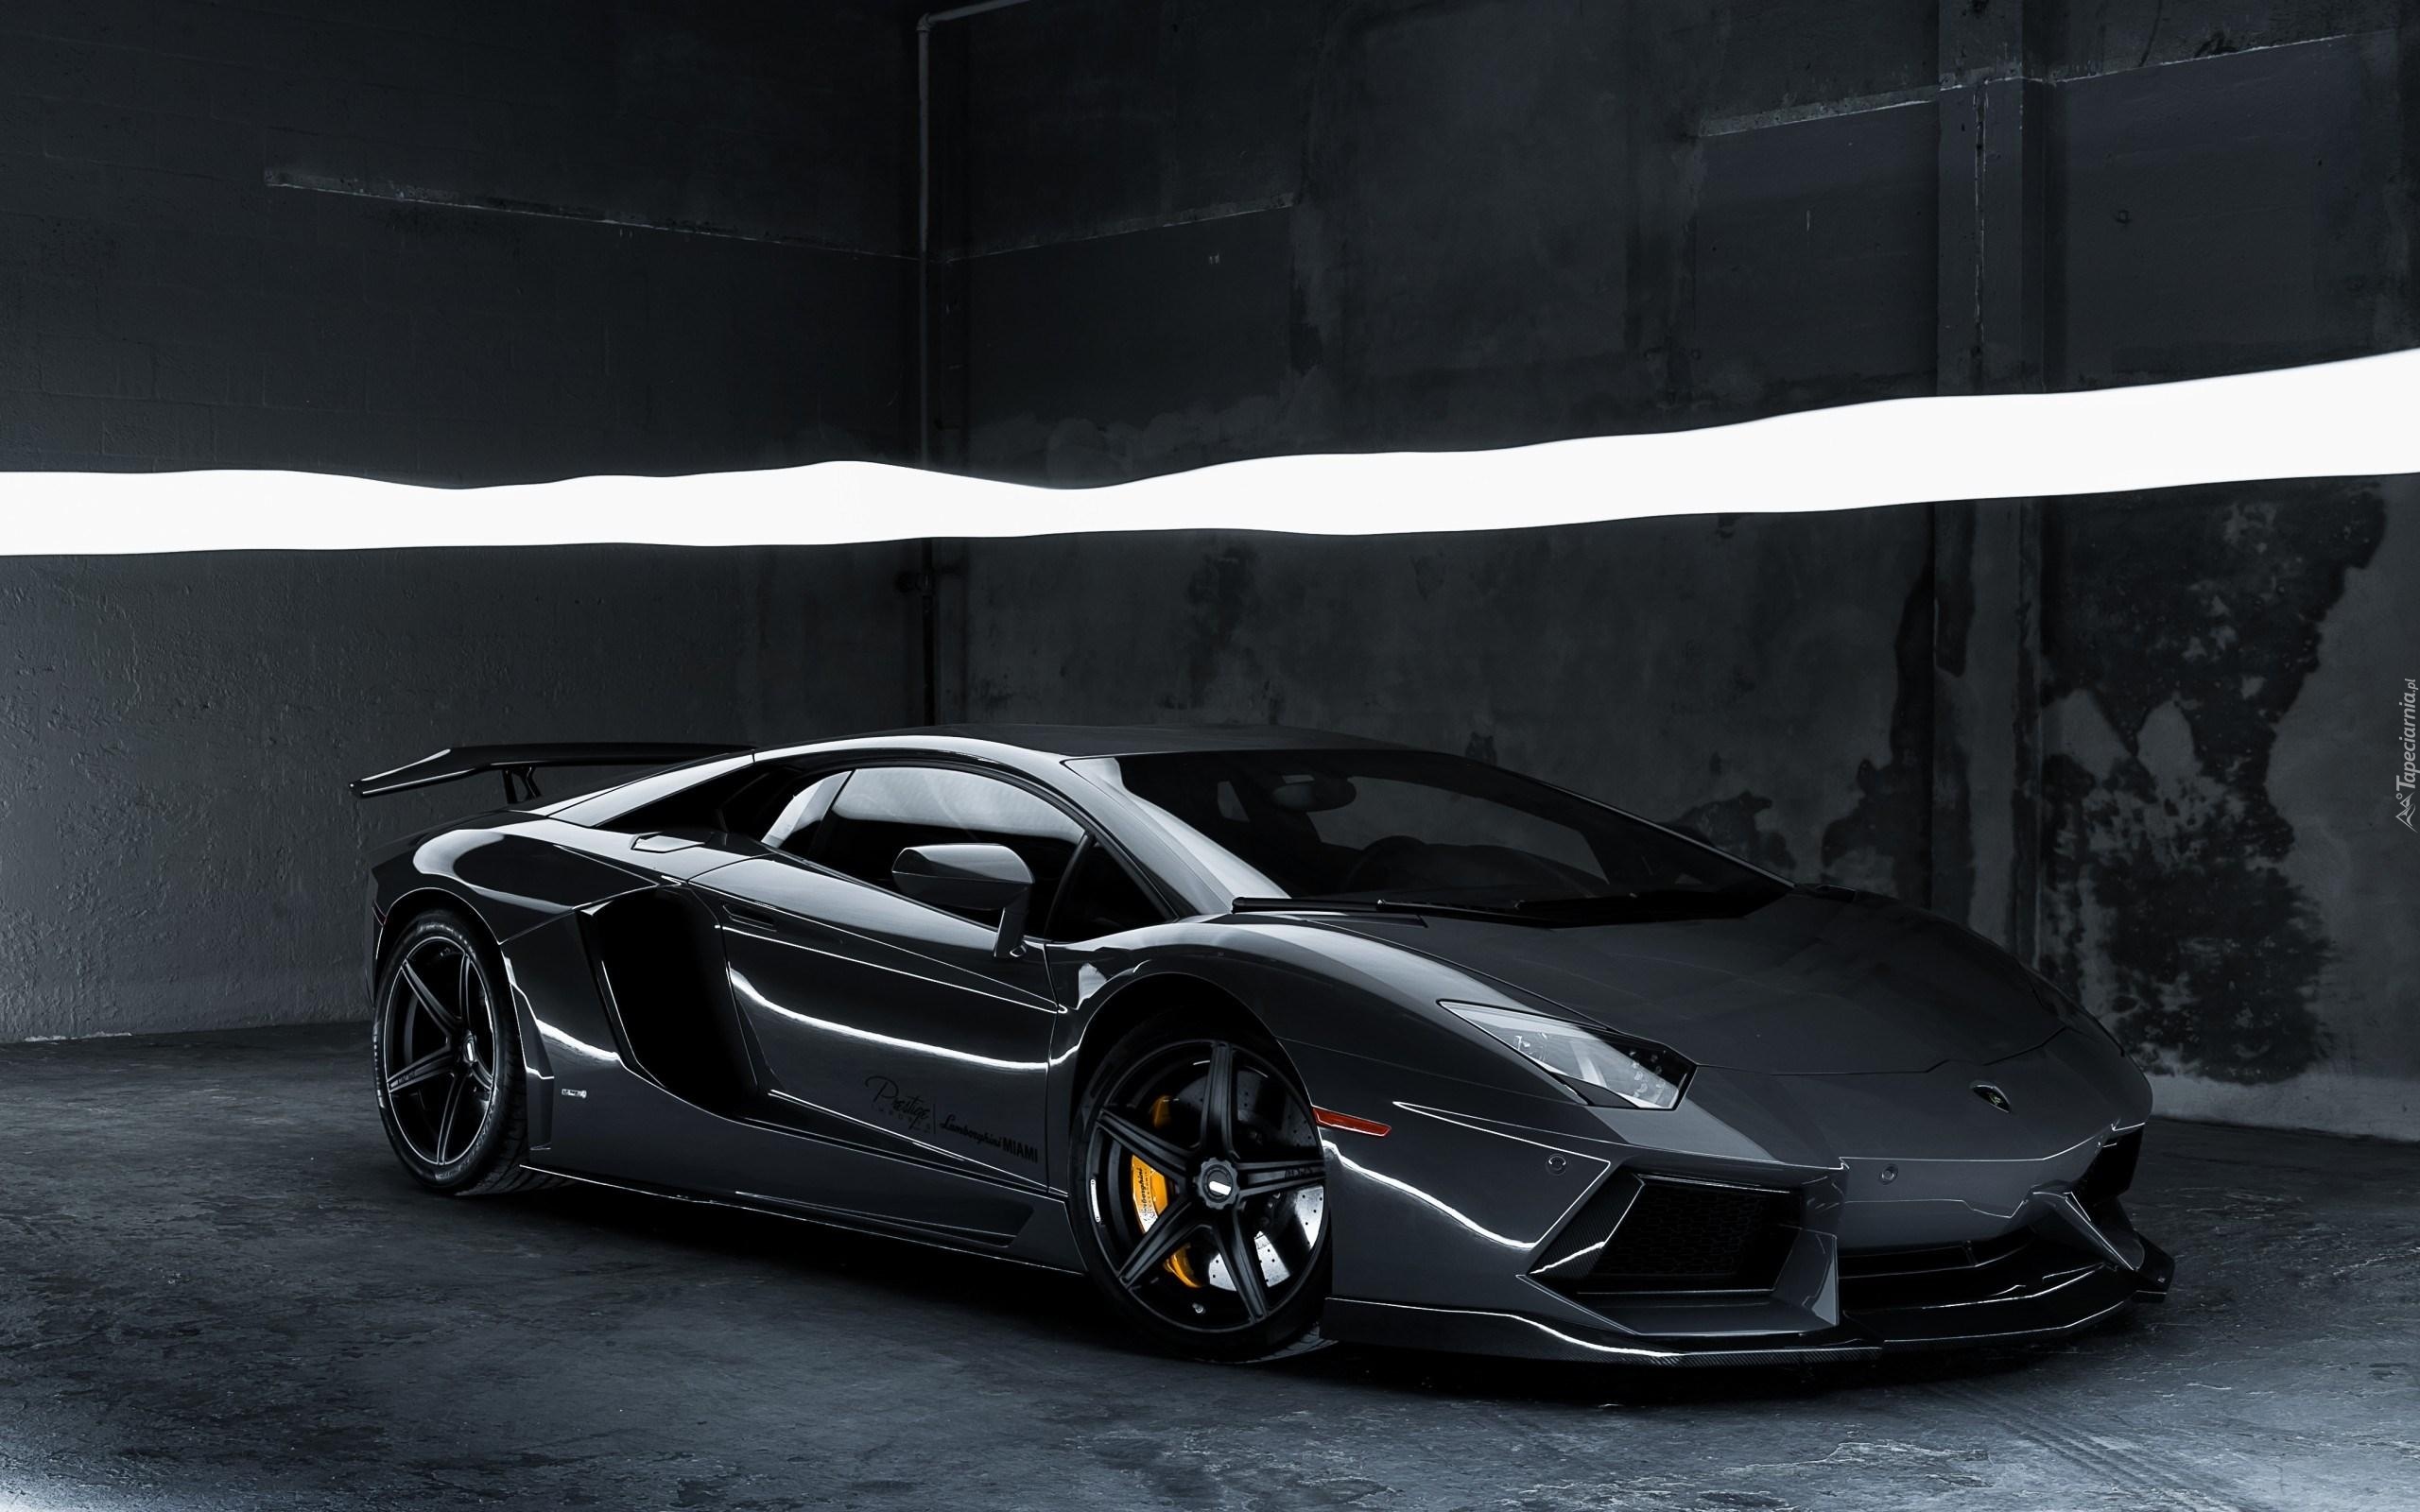 Samochód, Lamborghini, Aventador